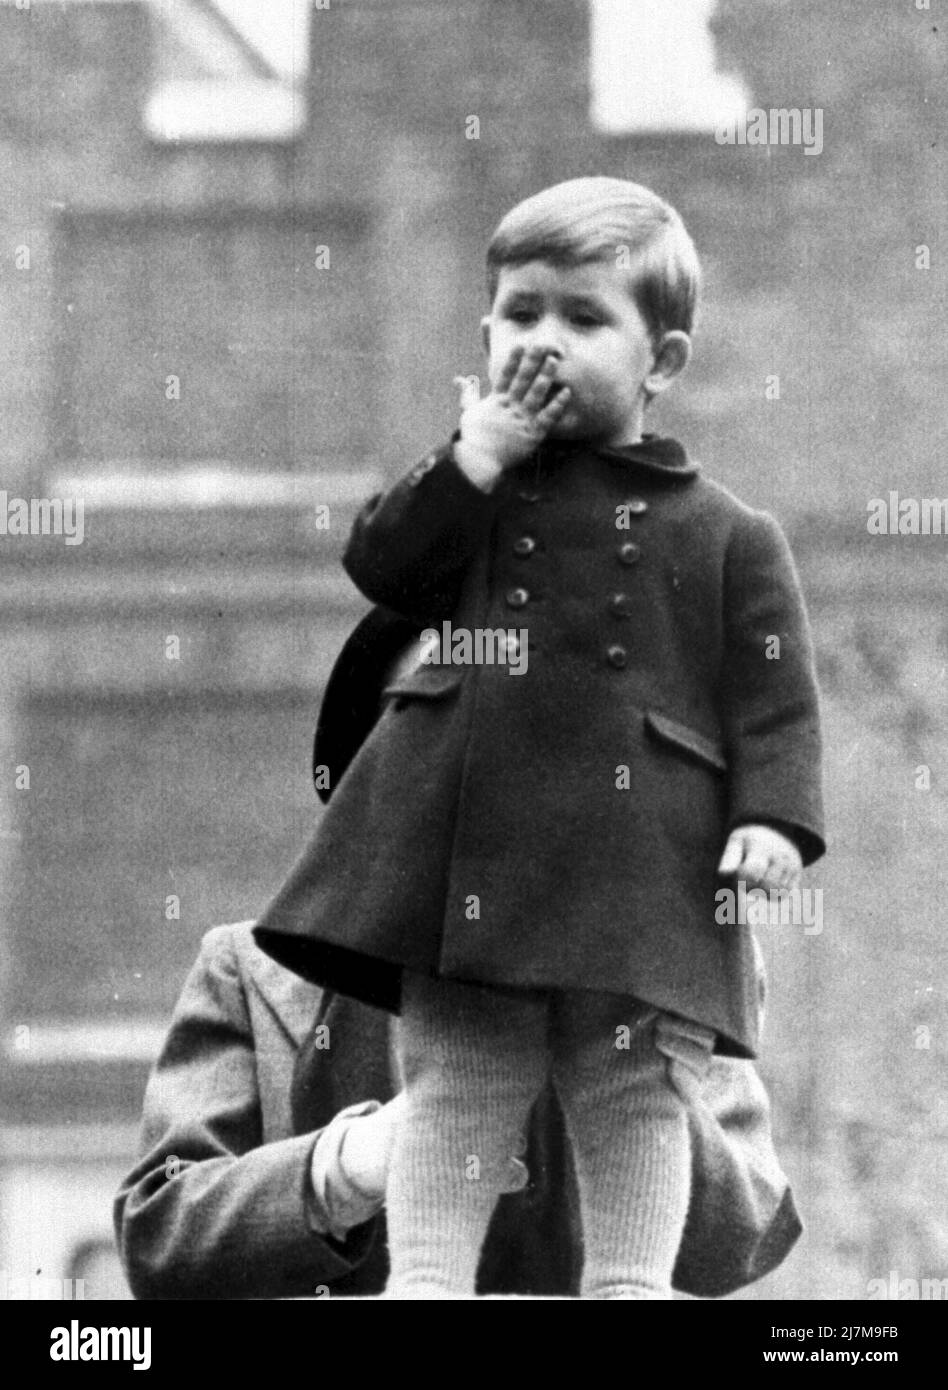 Aktenfoto vom 04/11/52 von Prince Charles an der Wand des Clarence House, London. Als mollig-betroffenes Kleinkind stand Prinz Charles an einer Wand im Clarence House und küsste seine Mutter und Großeltern, während er die Wagen in einer Prozession für die staatliche Eröffnung des Parlaments beobachtete. Es war 1950 und George VI. War noch auf dem Thron. Ausgabedatum: Dienstag, 10. Mai 2022. Stockfoto